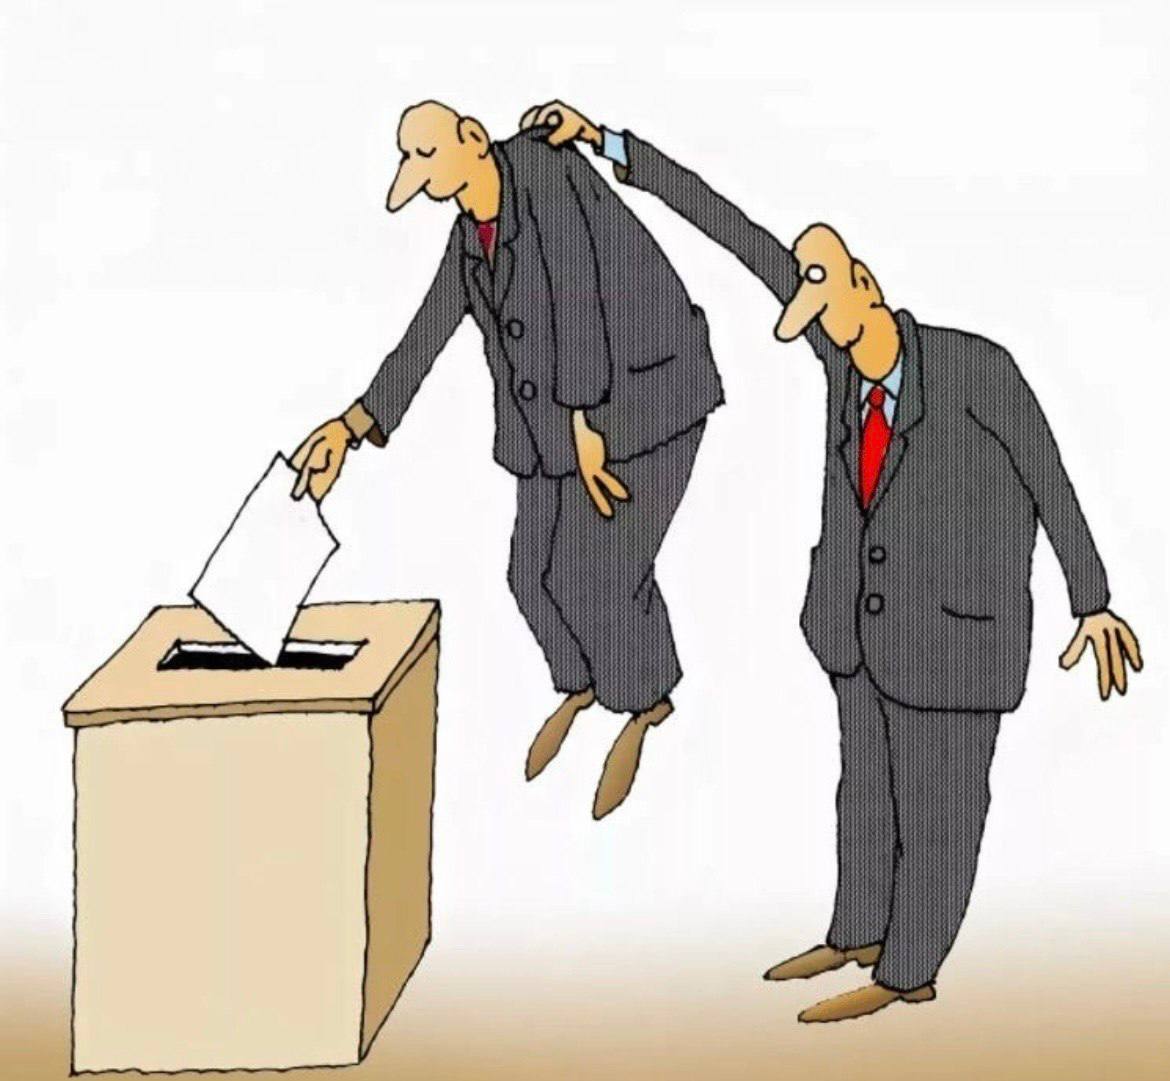 Препятствие выборам ук. Выборы карикатура. Карикатуры на тему выборов. Выборы иллюстрация. Избиратель карикатура.